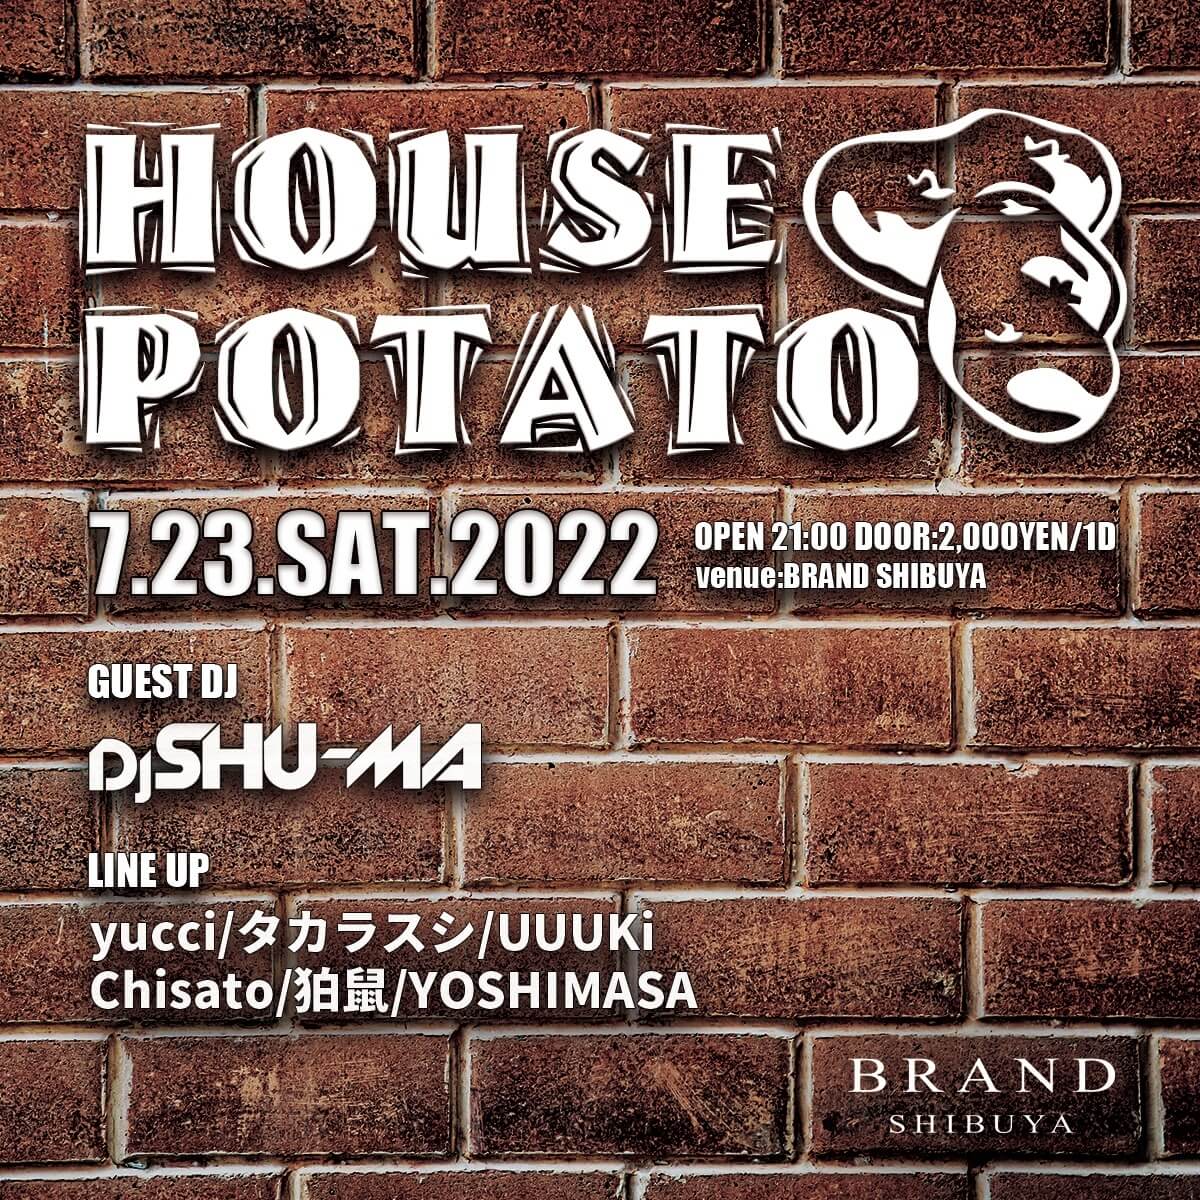 【HOUSE POTATO】 2022年07月23日（土曜日）に渋谷 クラブのBRAND SHIBUYAで開催されるHOUSEイベント